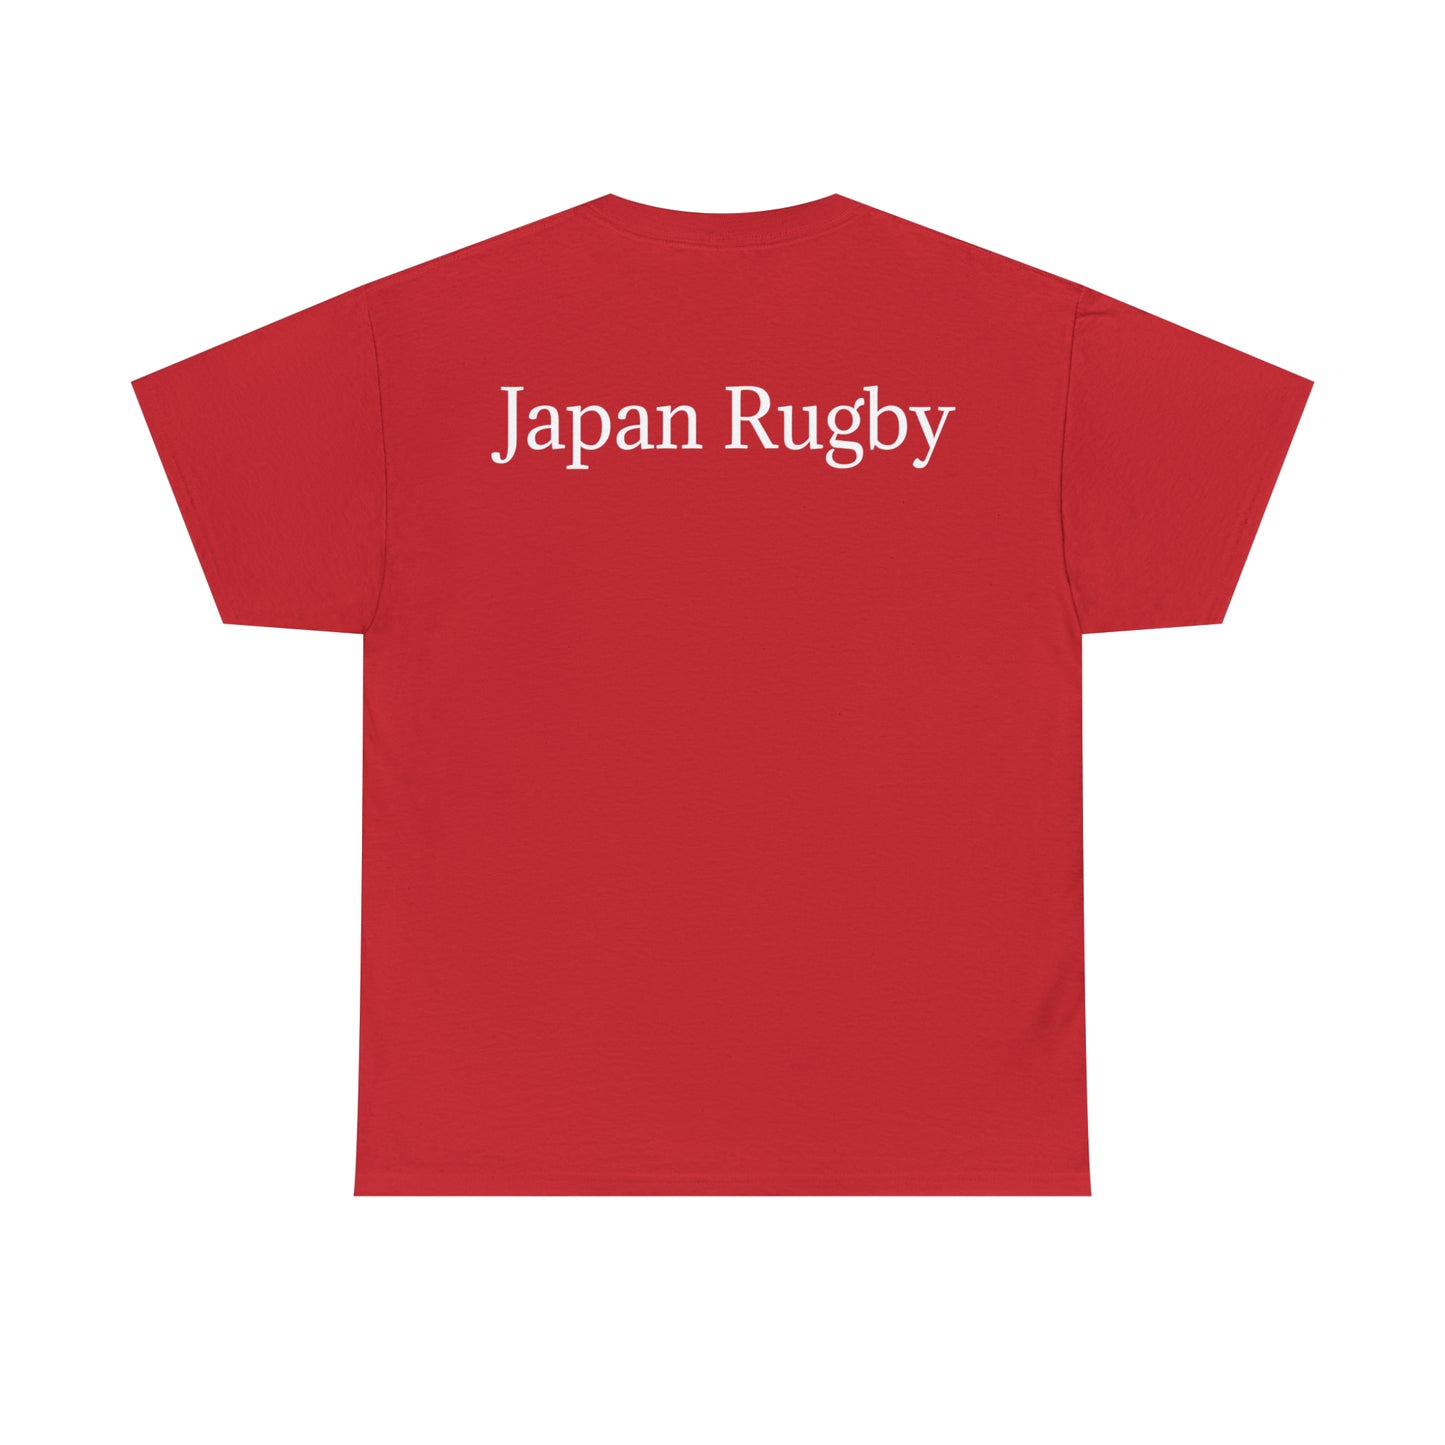 Rugby Samurai - dark shirts